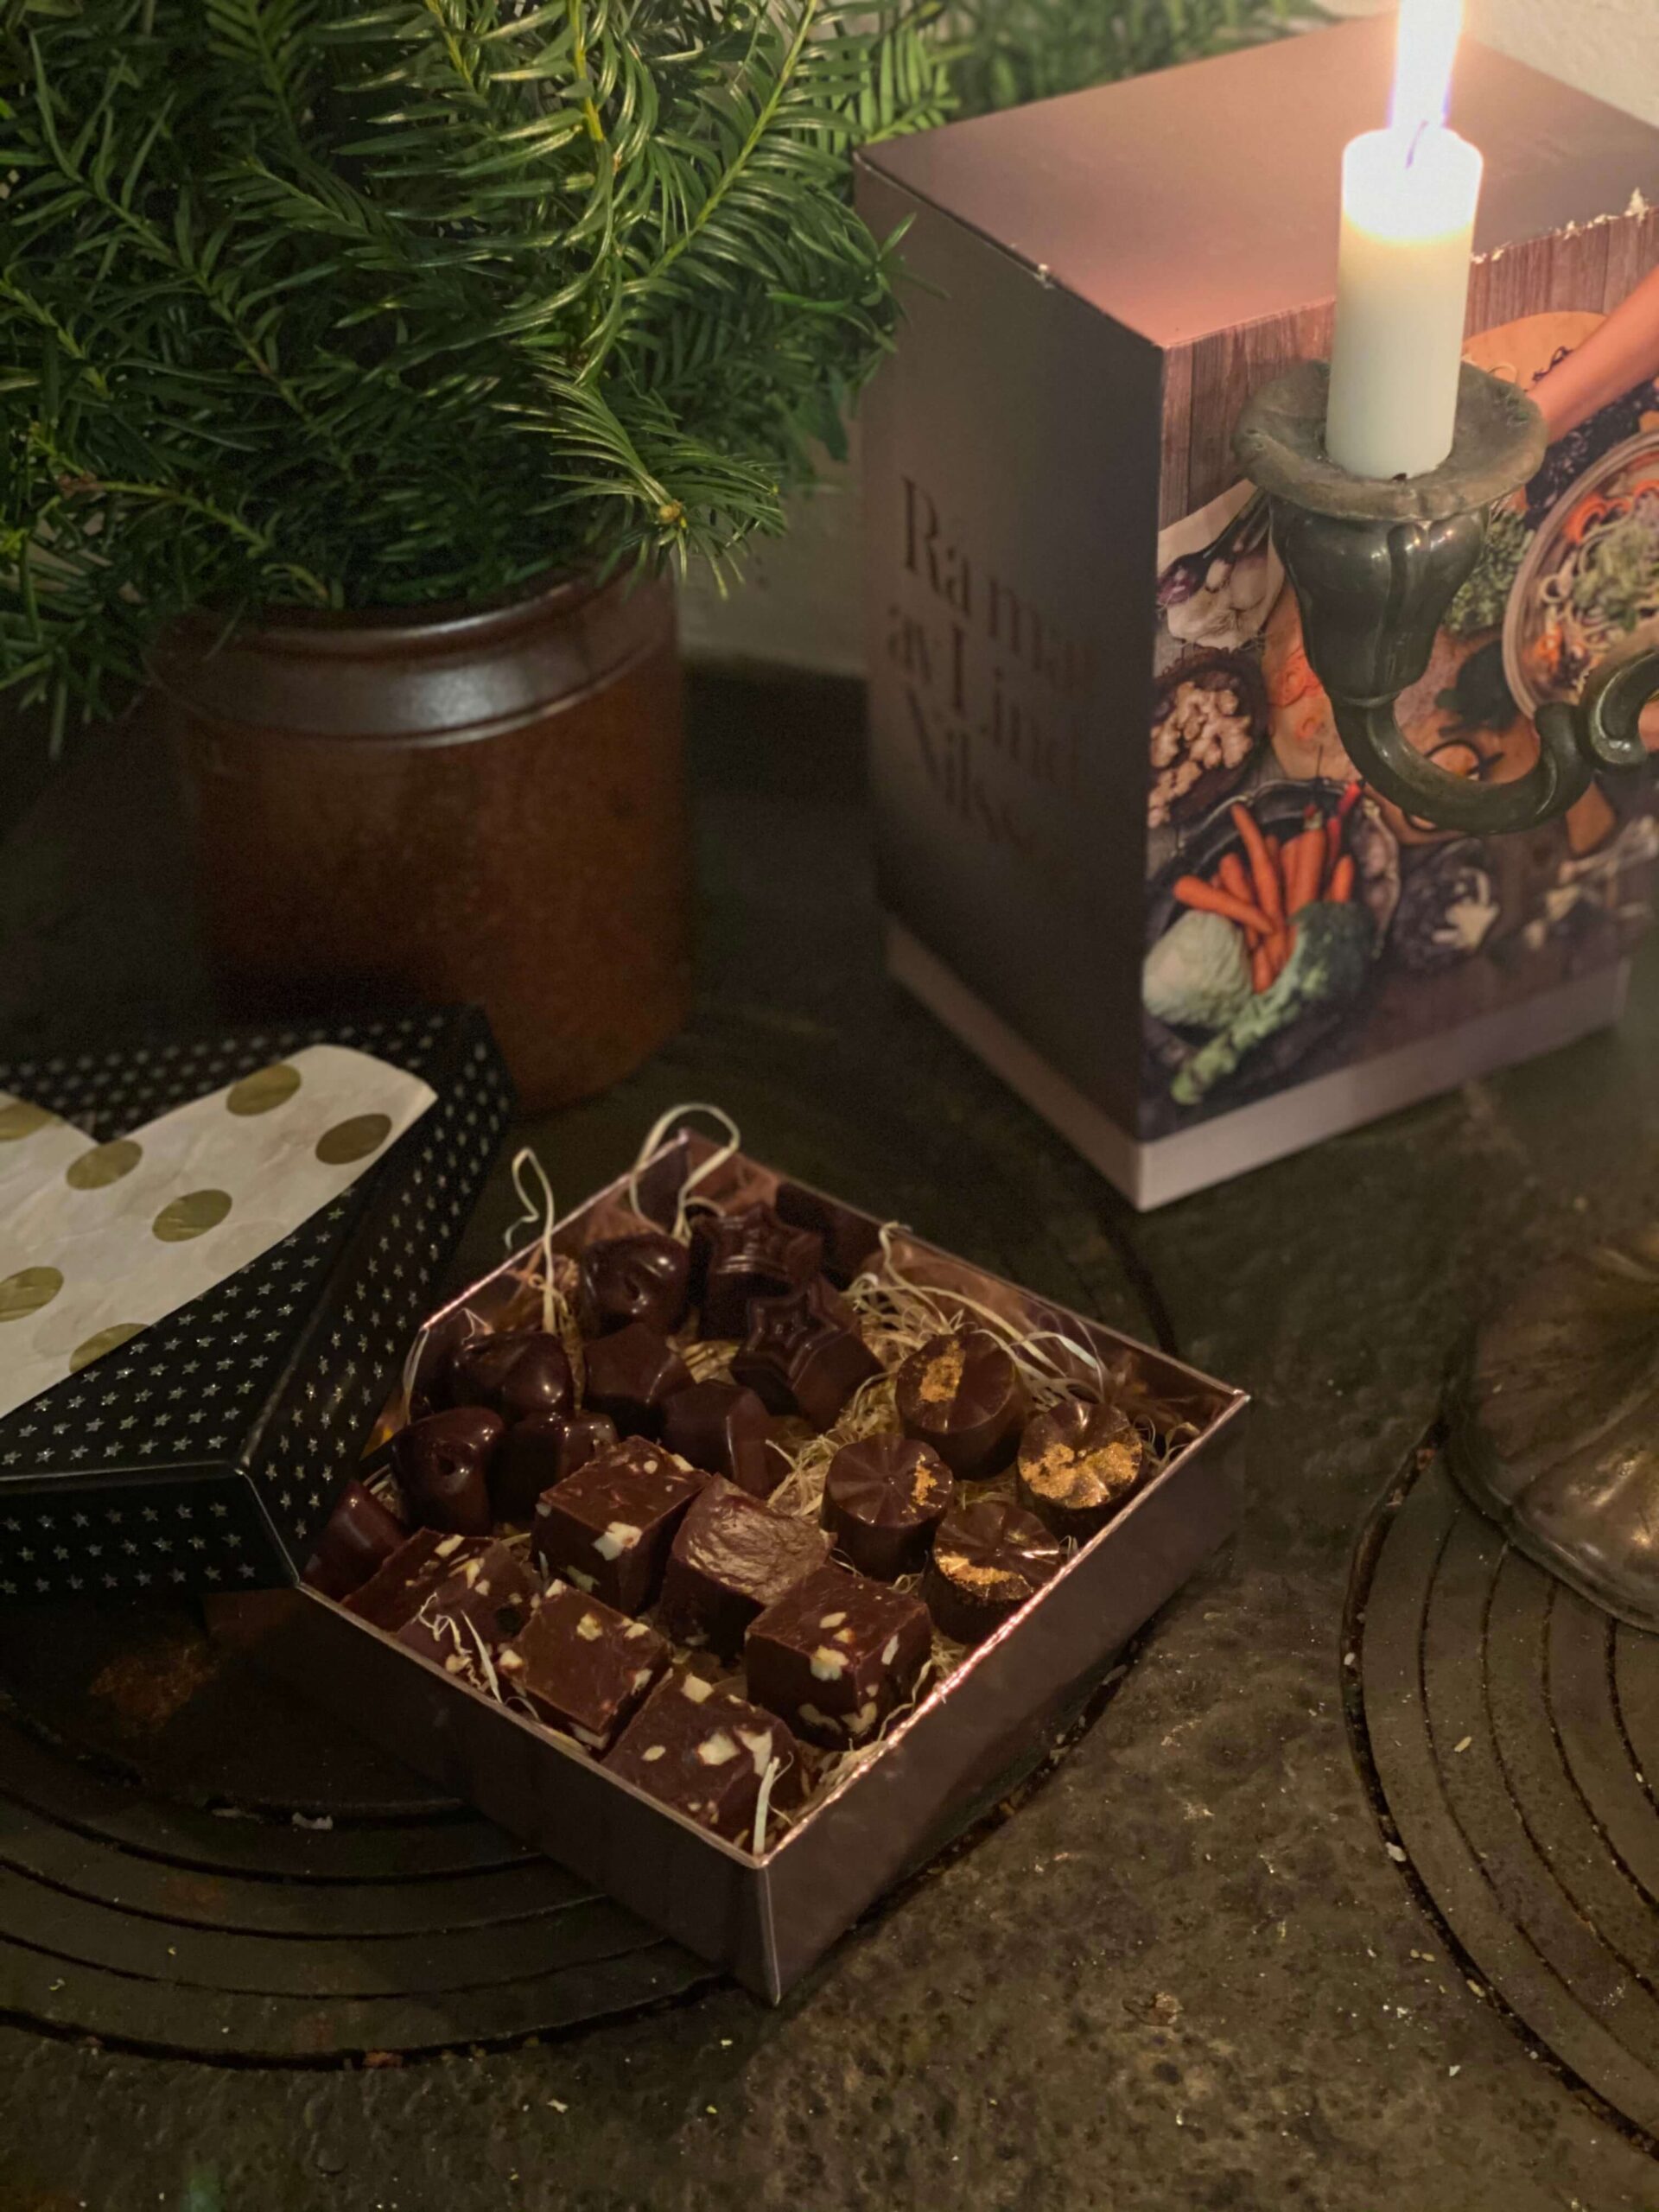 Fil 000 1 1 scaled Rå choklad, bästa julklappen!